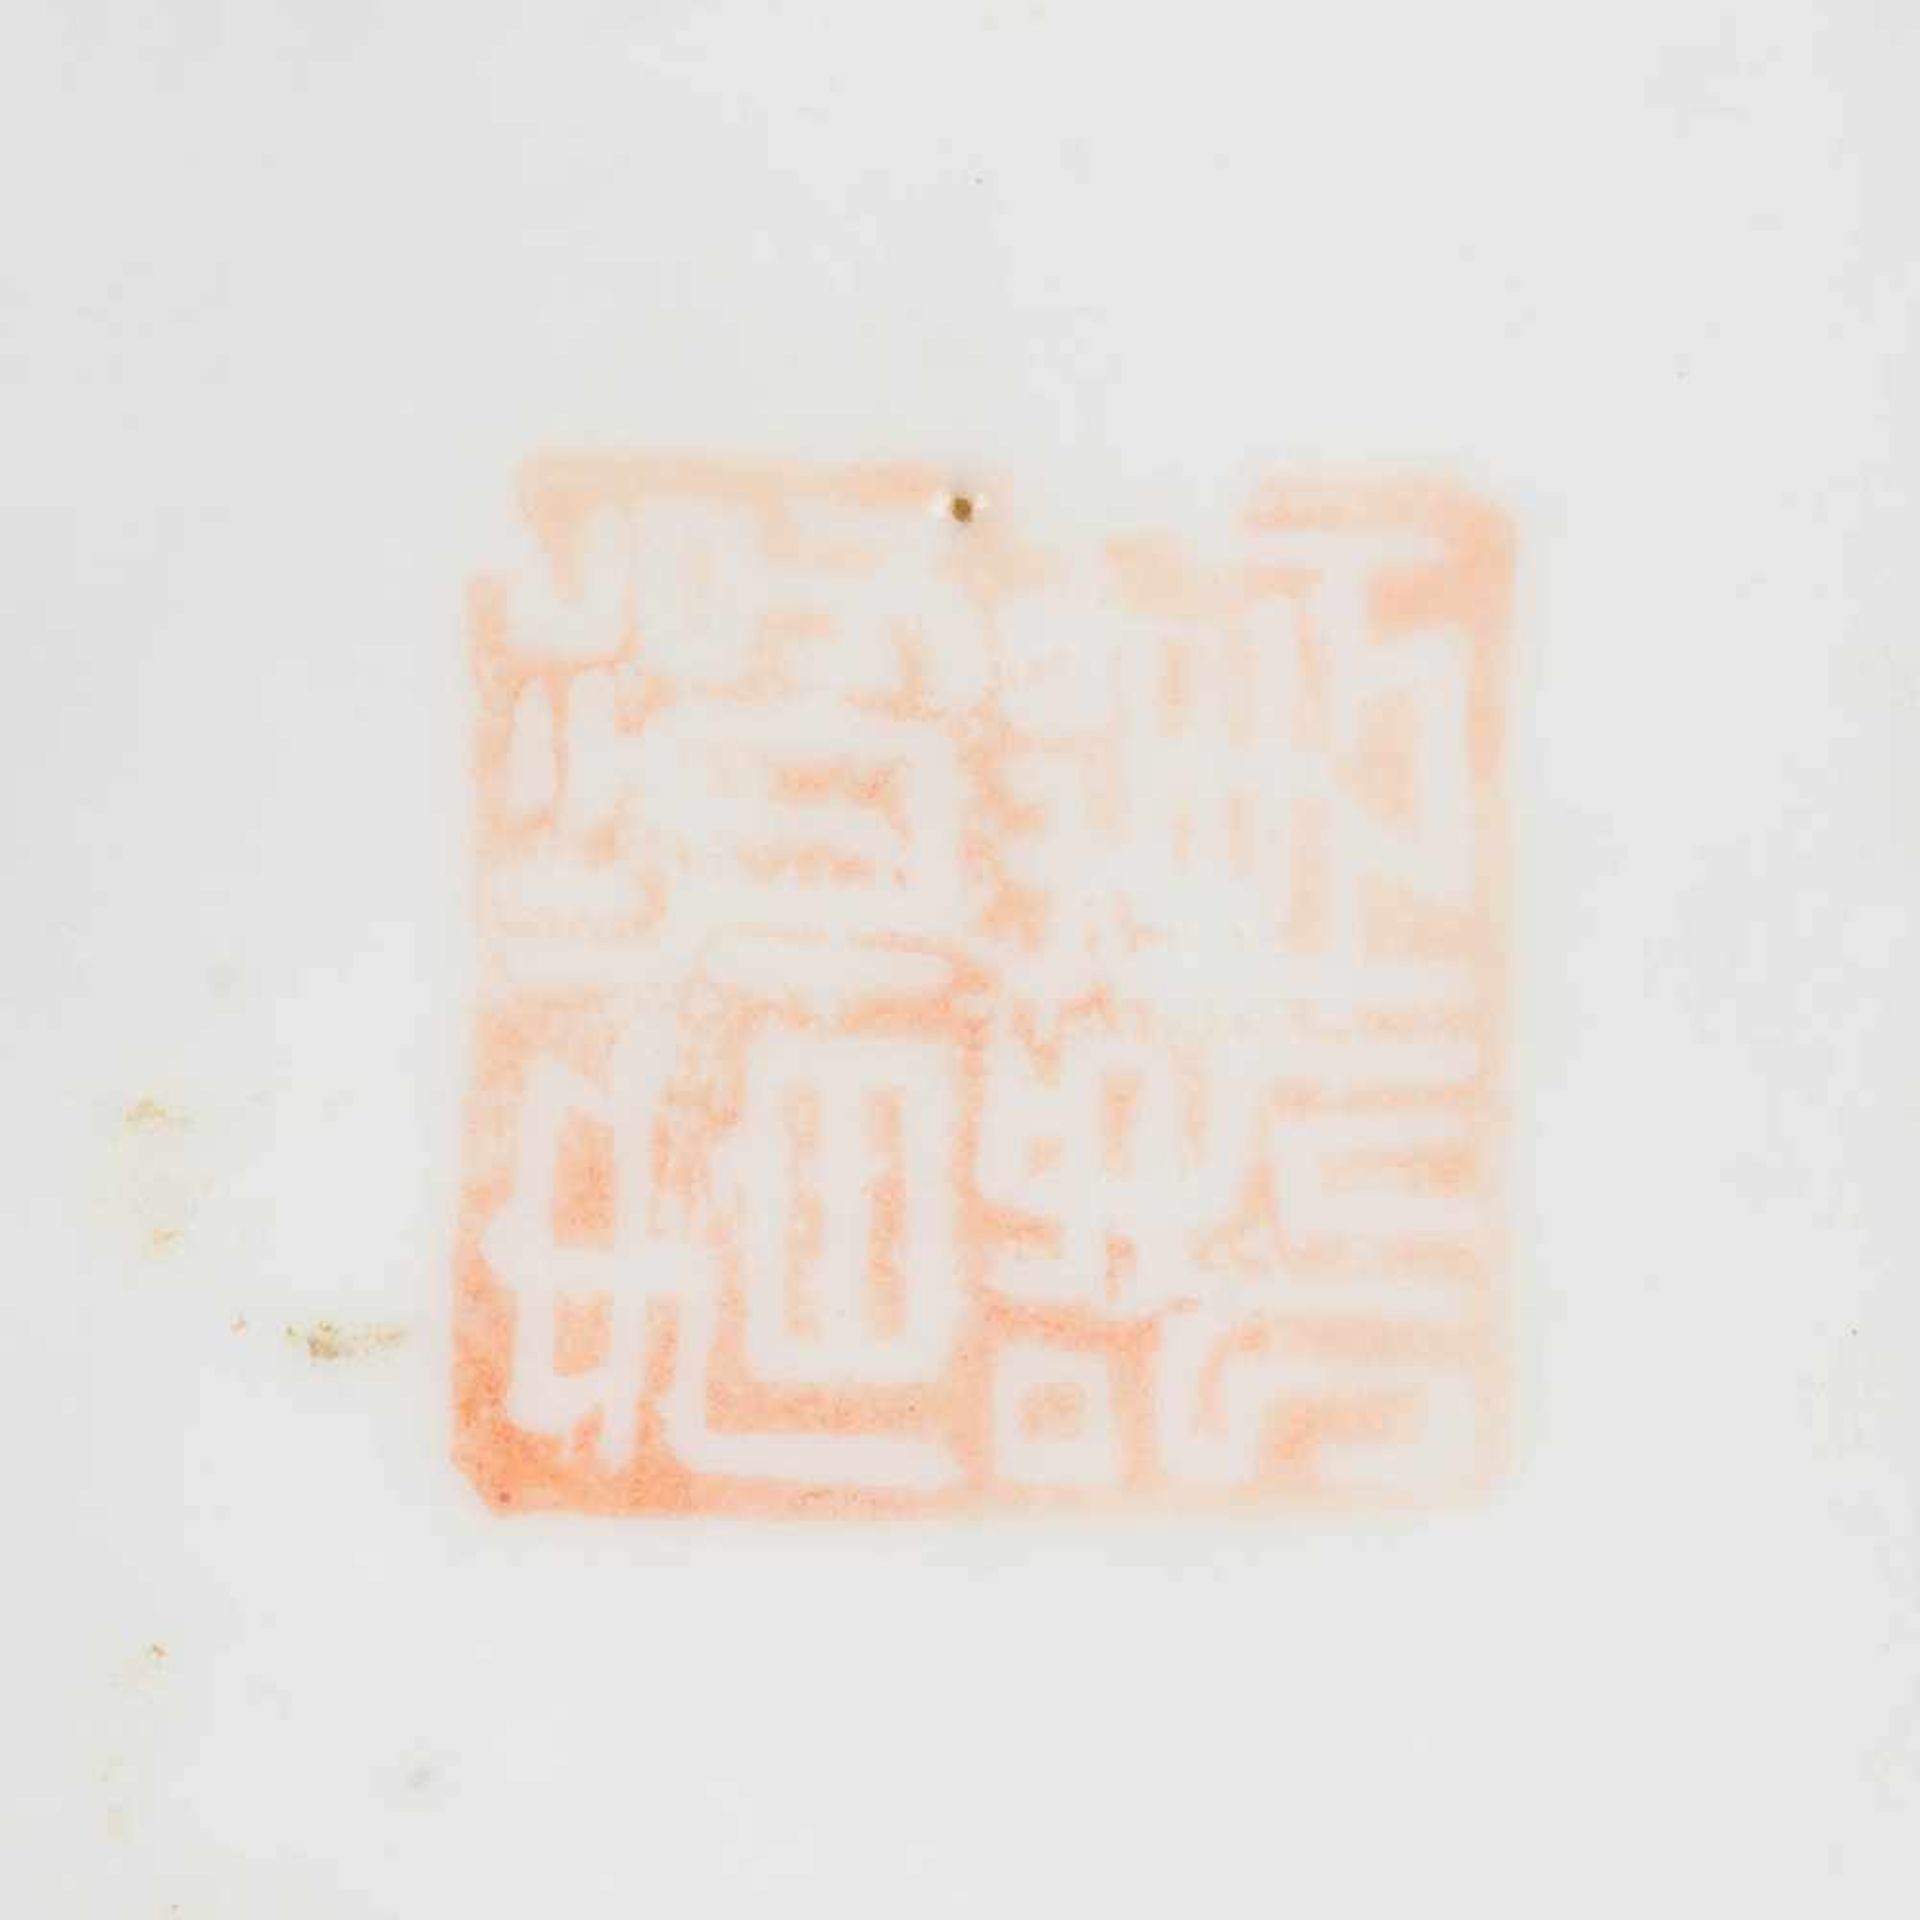 ZWEI KLEINE VASEN China, um 1900 Porzellan, polychrome Aufglasurbemalung. H. 22,5 cm-22,6 cm. - Image 6 of 6